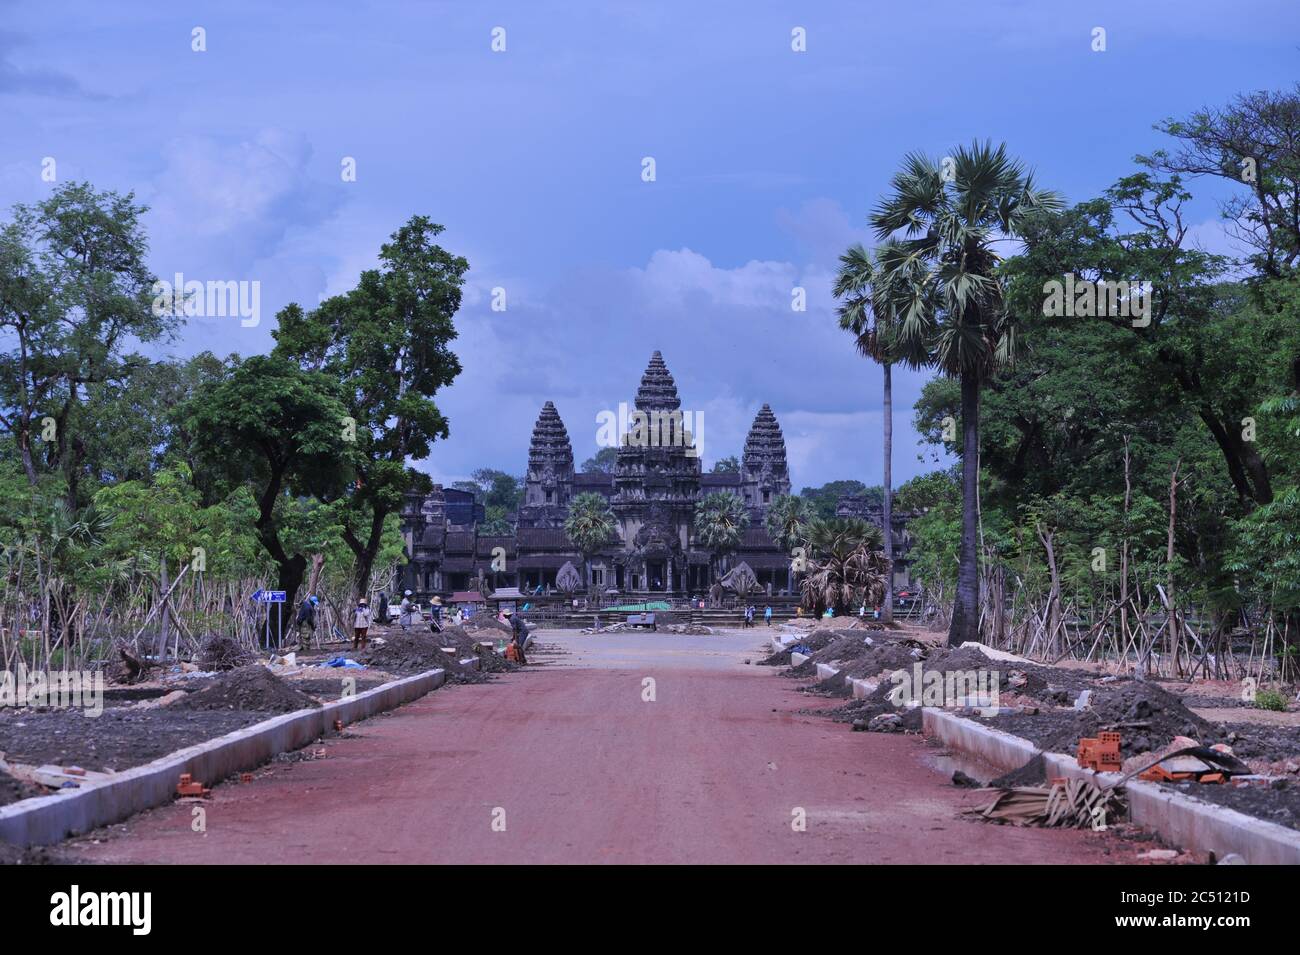 Durante la pandemia del coronavirus, Angkor Wat está abandonado. Mientras el templo vacío espera el regreso de los turistas, el gobierno camboyano construye un nuevo camino al oeste de la ruina. Parque Arqueológico de Angkor, Provincia de Siem Reap, Camboya. 16 de junio de 2020. © Kraig Lieb Foto de stock